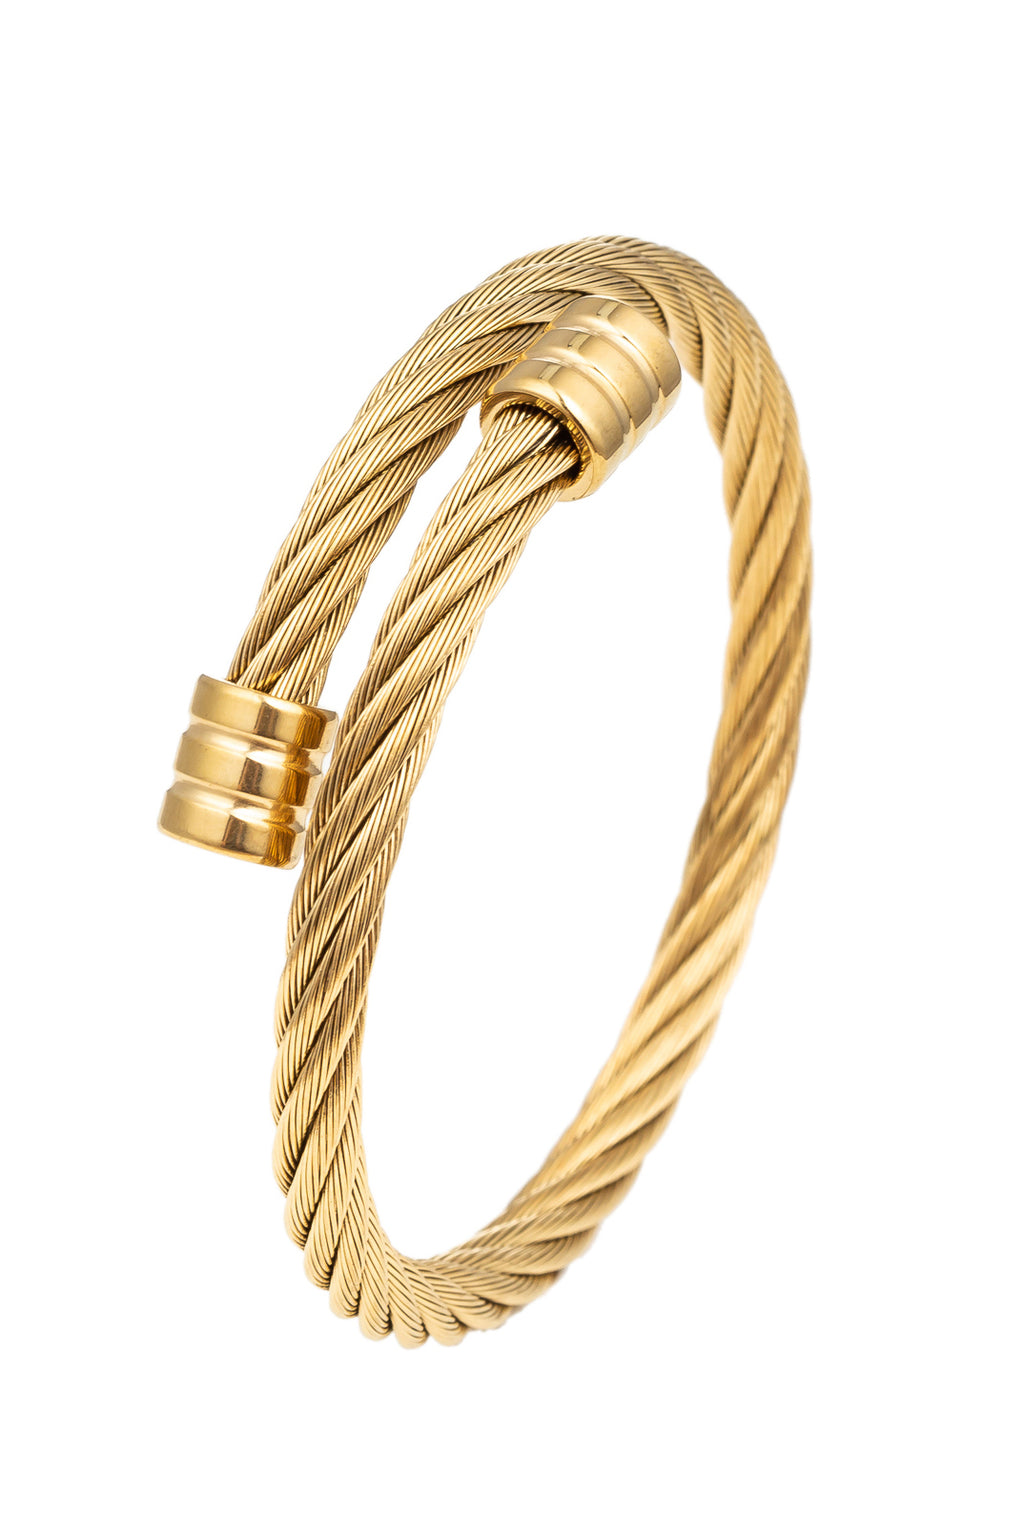 Gold titanium wire cable wrap cuff bracelet.